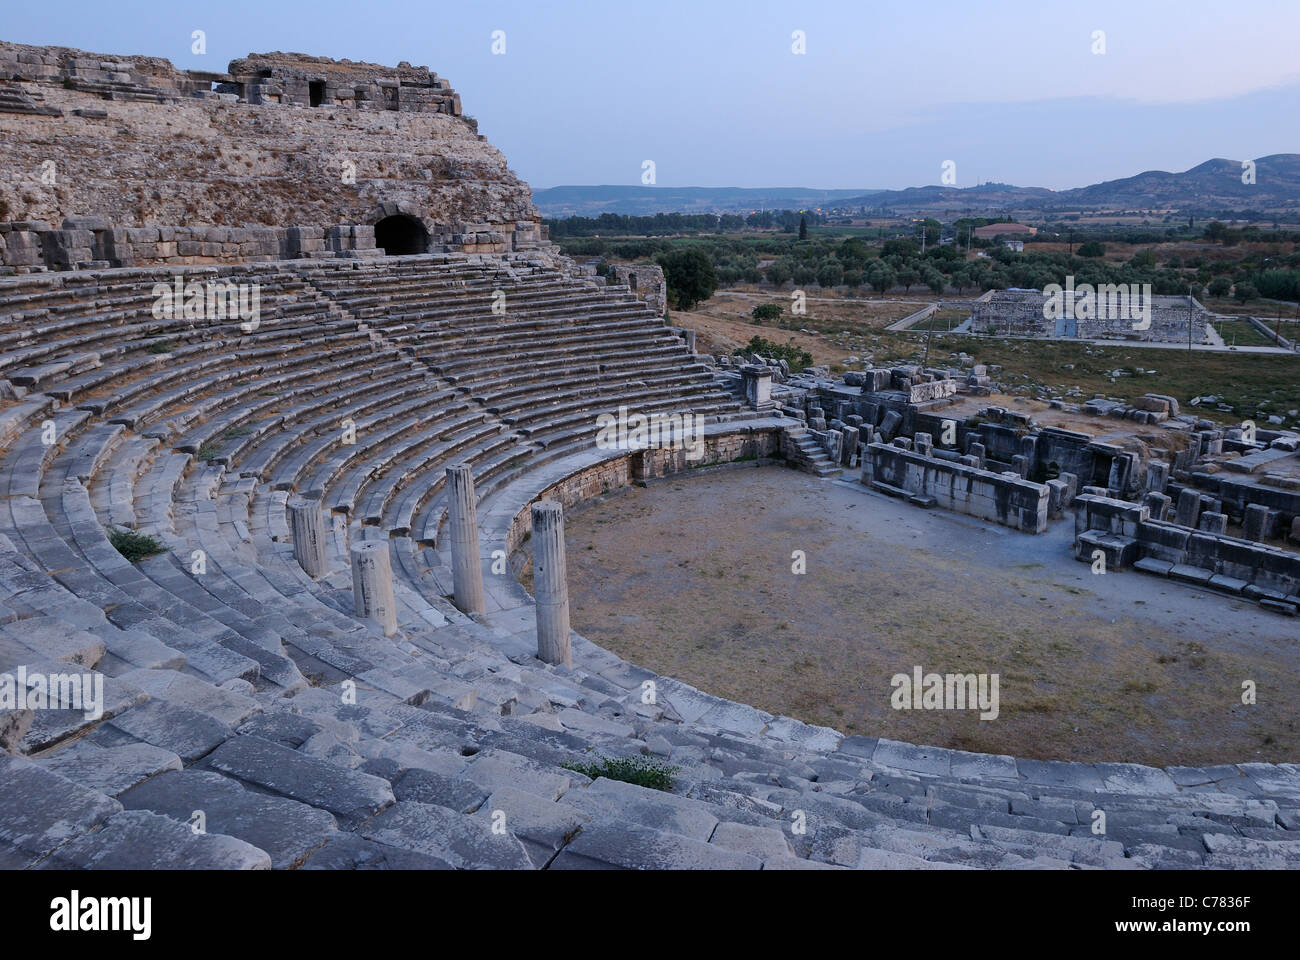 Ruines de l'amphithéâtre gréco-romain, Milet au crépuscule, au sud-ouest de l'ouest, de la Province d'Aydin Turquie, Europe, Moyen-Orient, Asie Banque D'Images